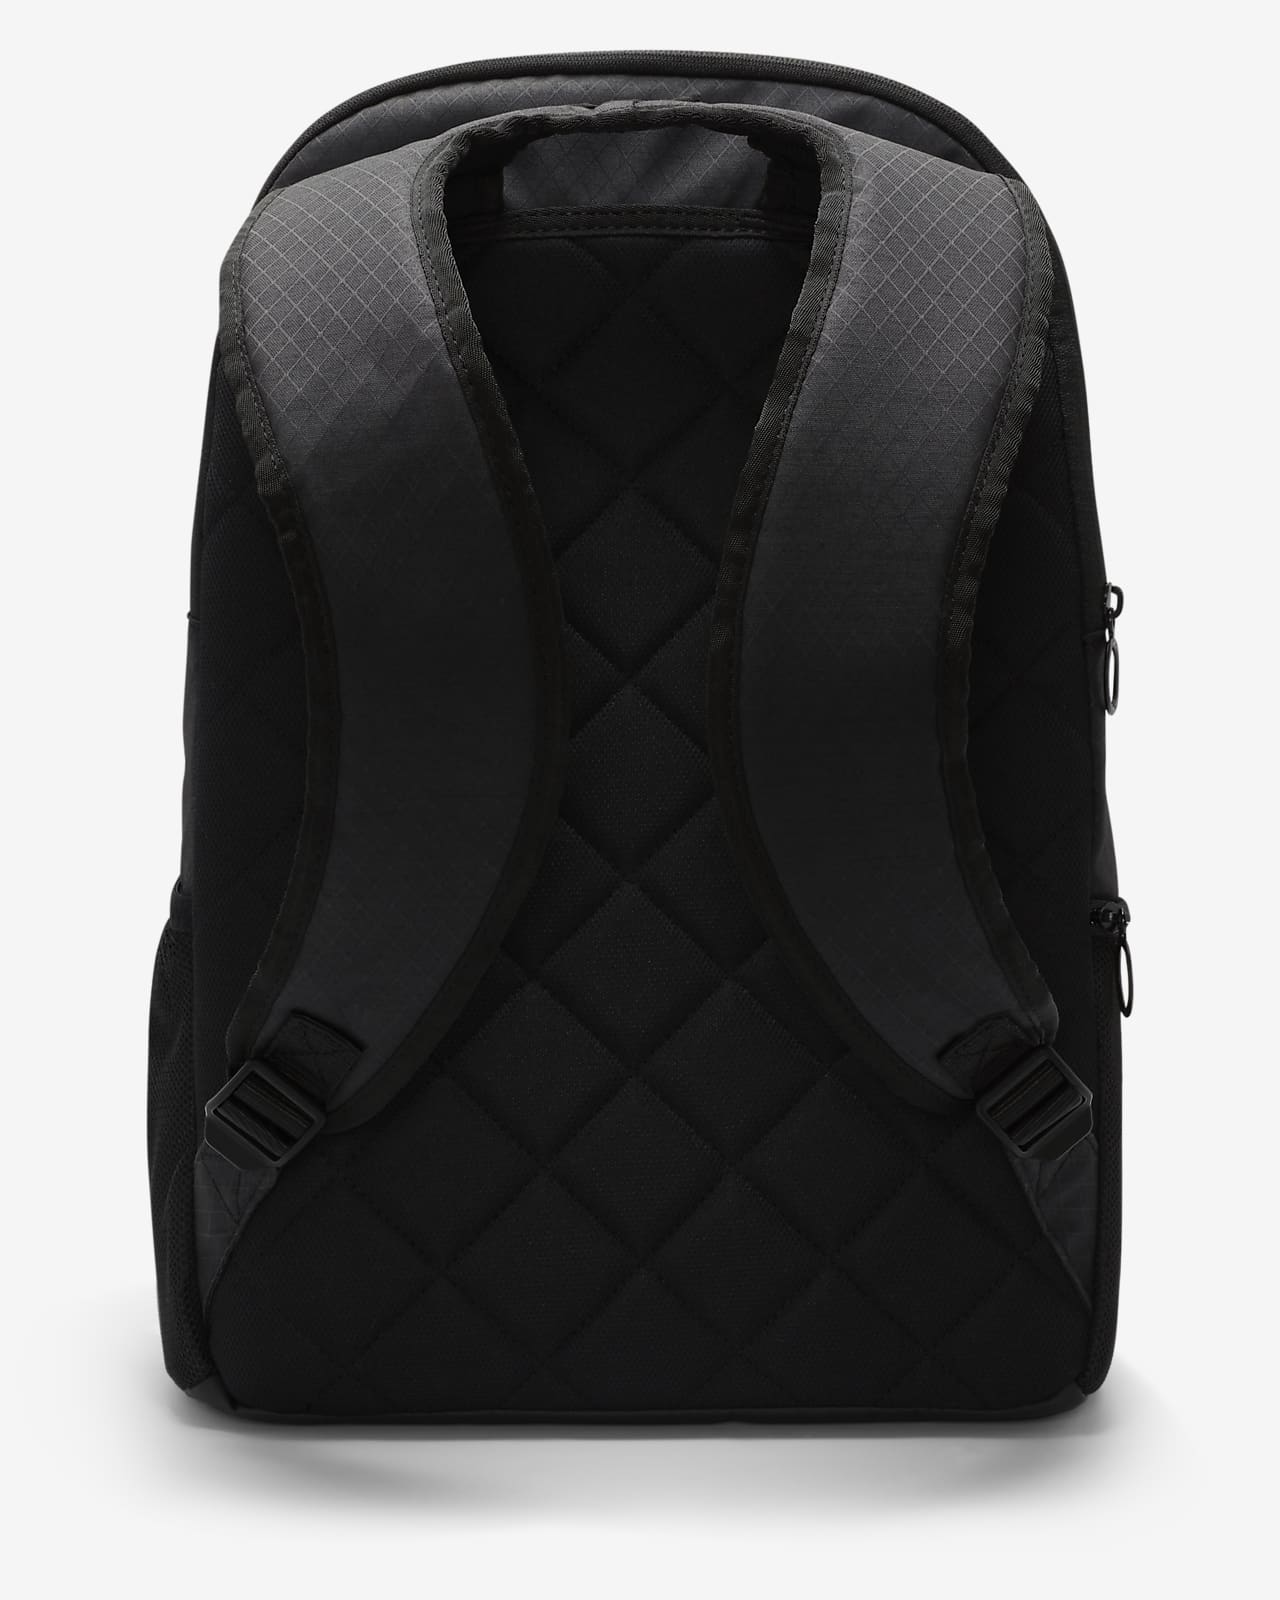 Nike Brasilia Winterized Graphic Training Backpack Black (Large, 24 L) :  : Moda